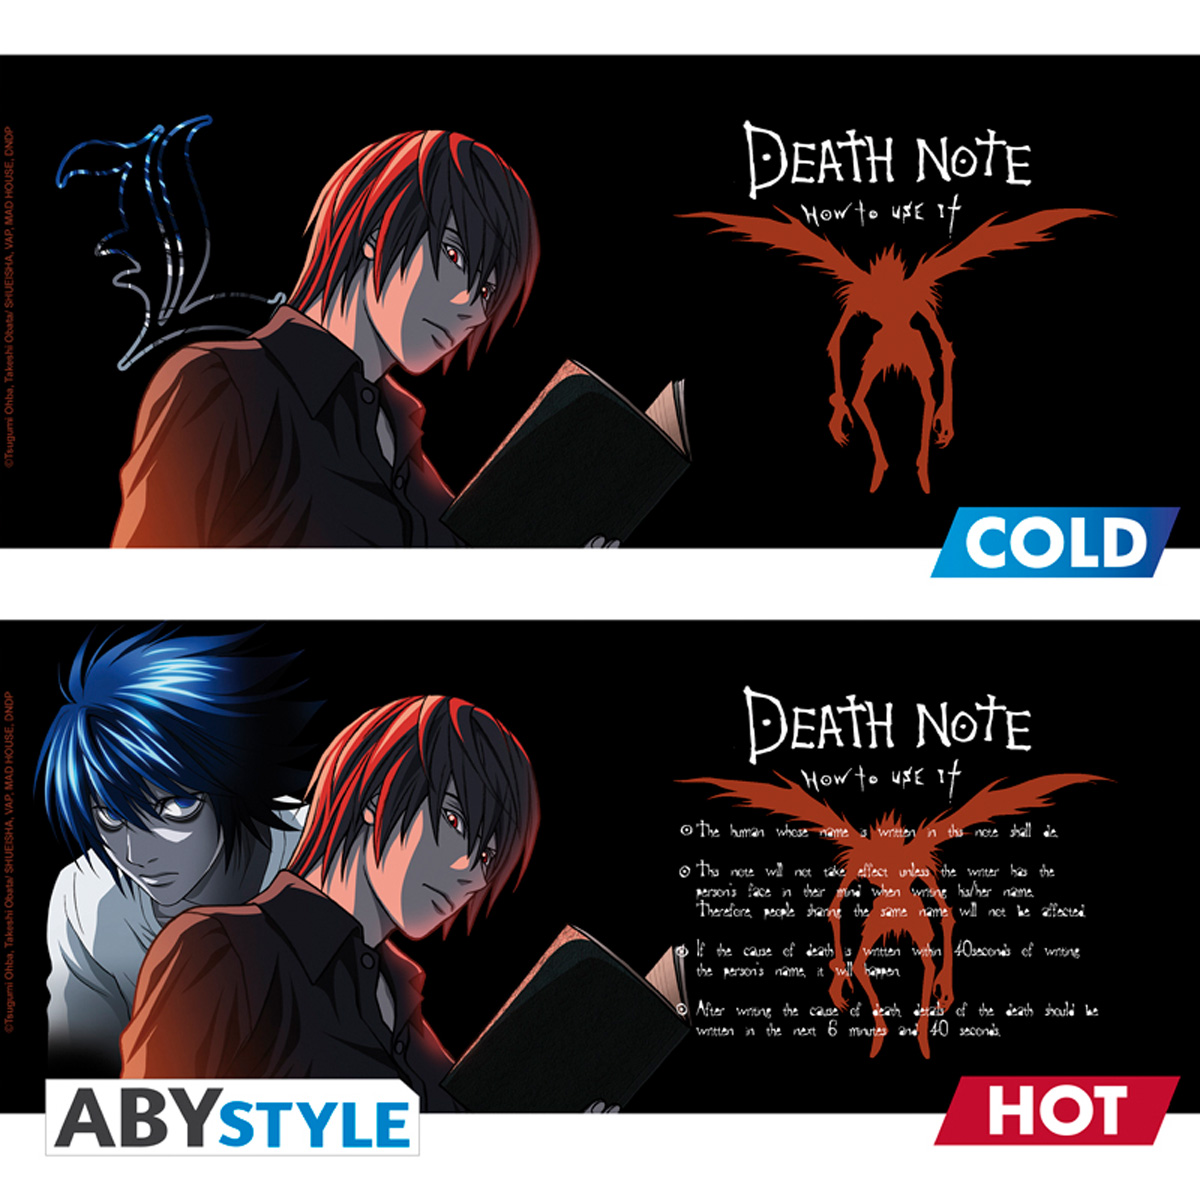 Novo filme de Death Note apresenta novos personagens e 6 Death Notes -  Crunchyroll Notícias